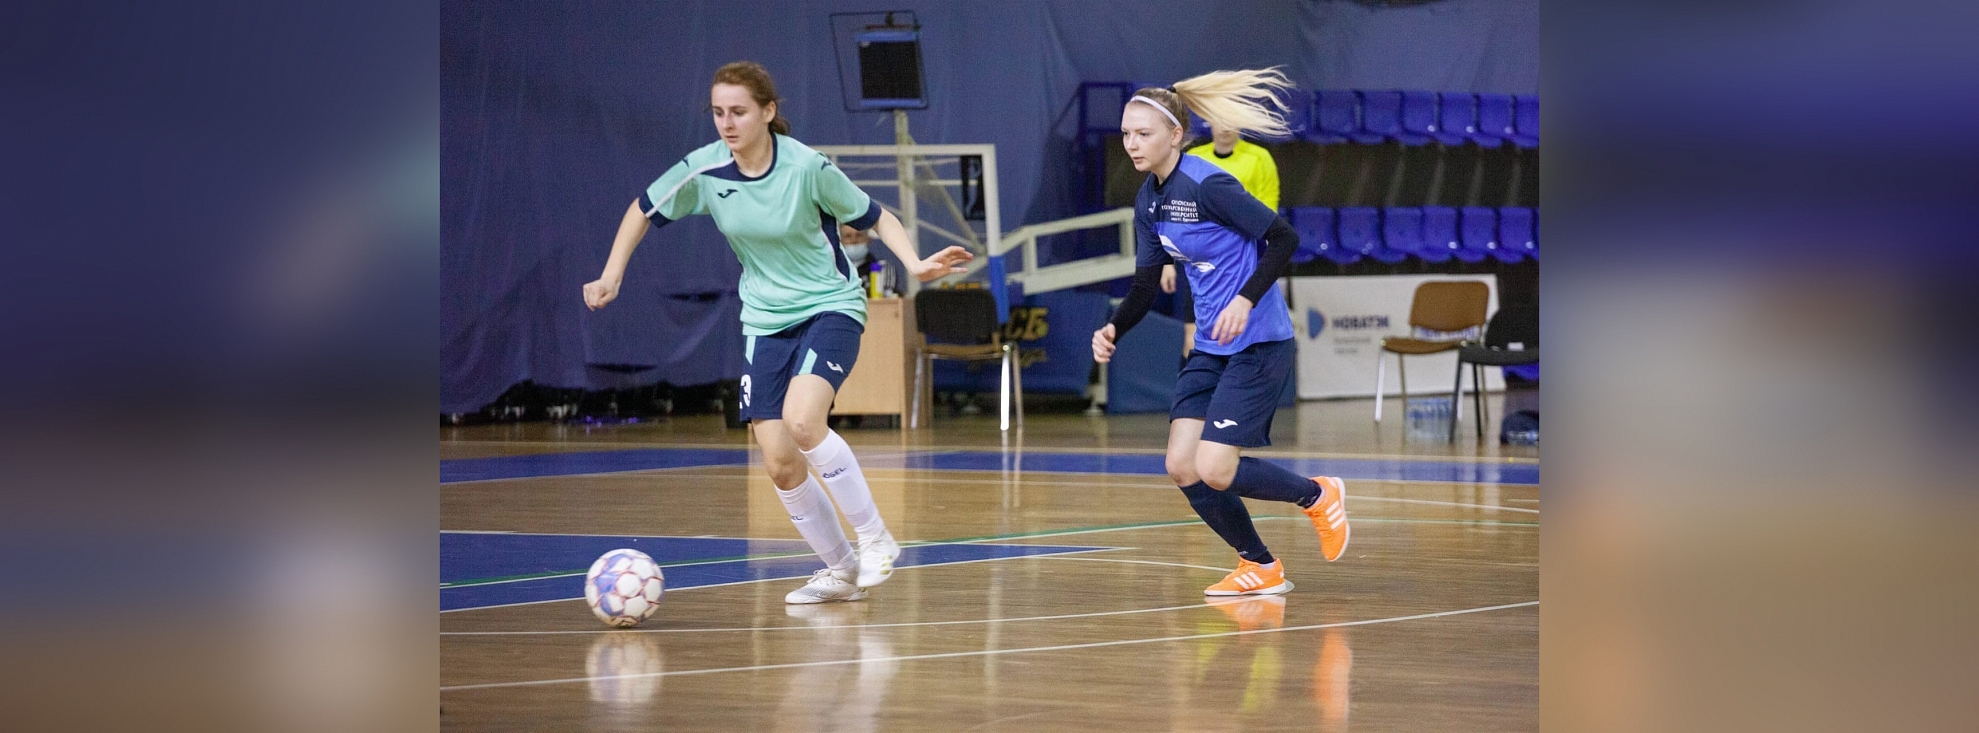 ОрелГУ стартовал с двух побед в Первенстве СФФ "Центр" по мини-футболу среди женщин